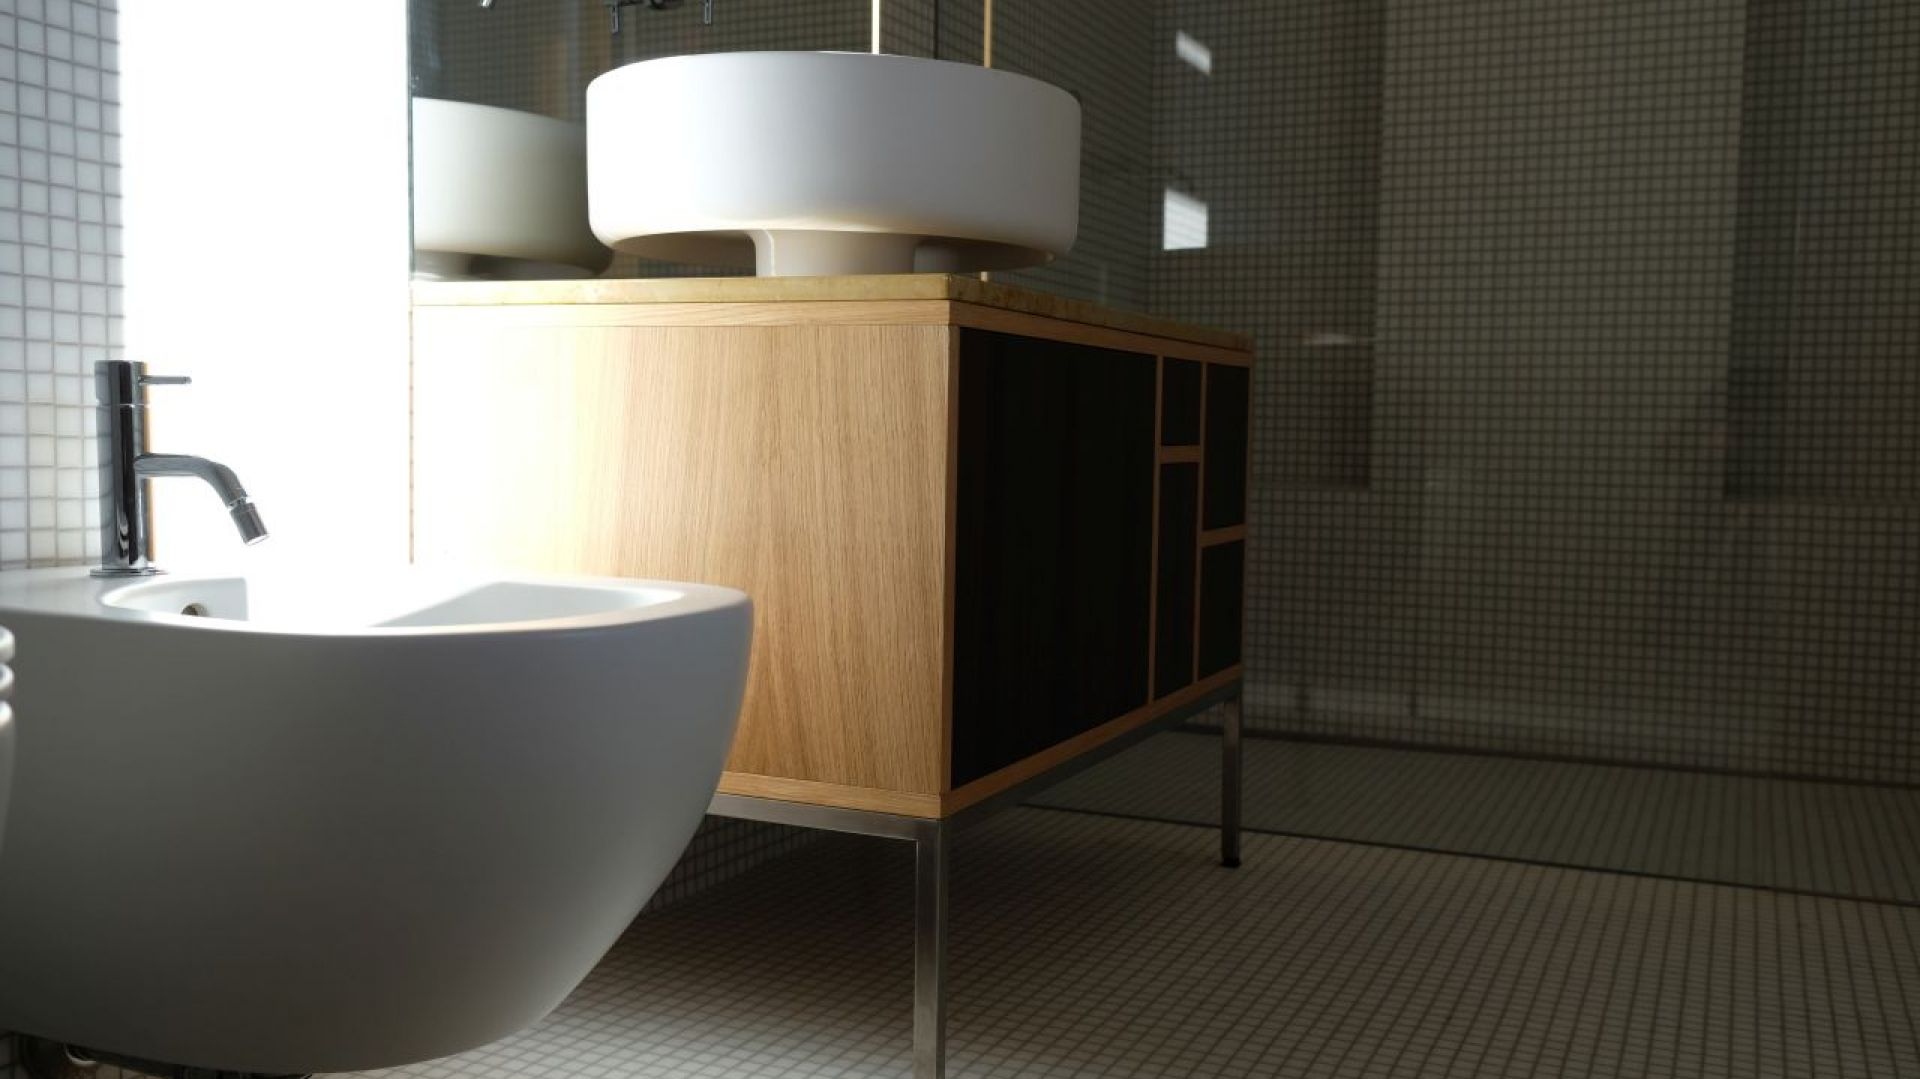 Minimalistyczna łazienka w drewnie i szkle